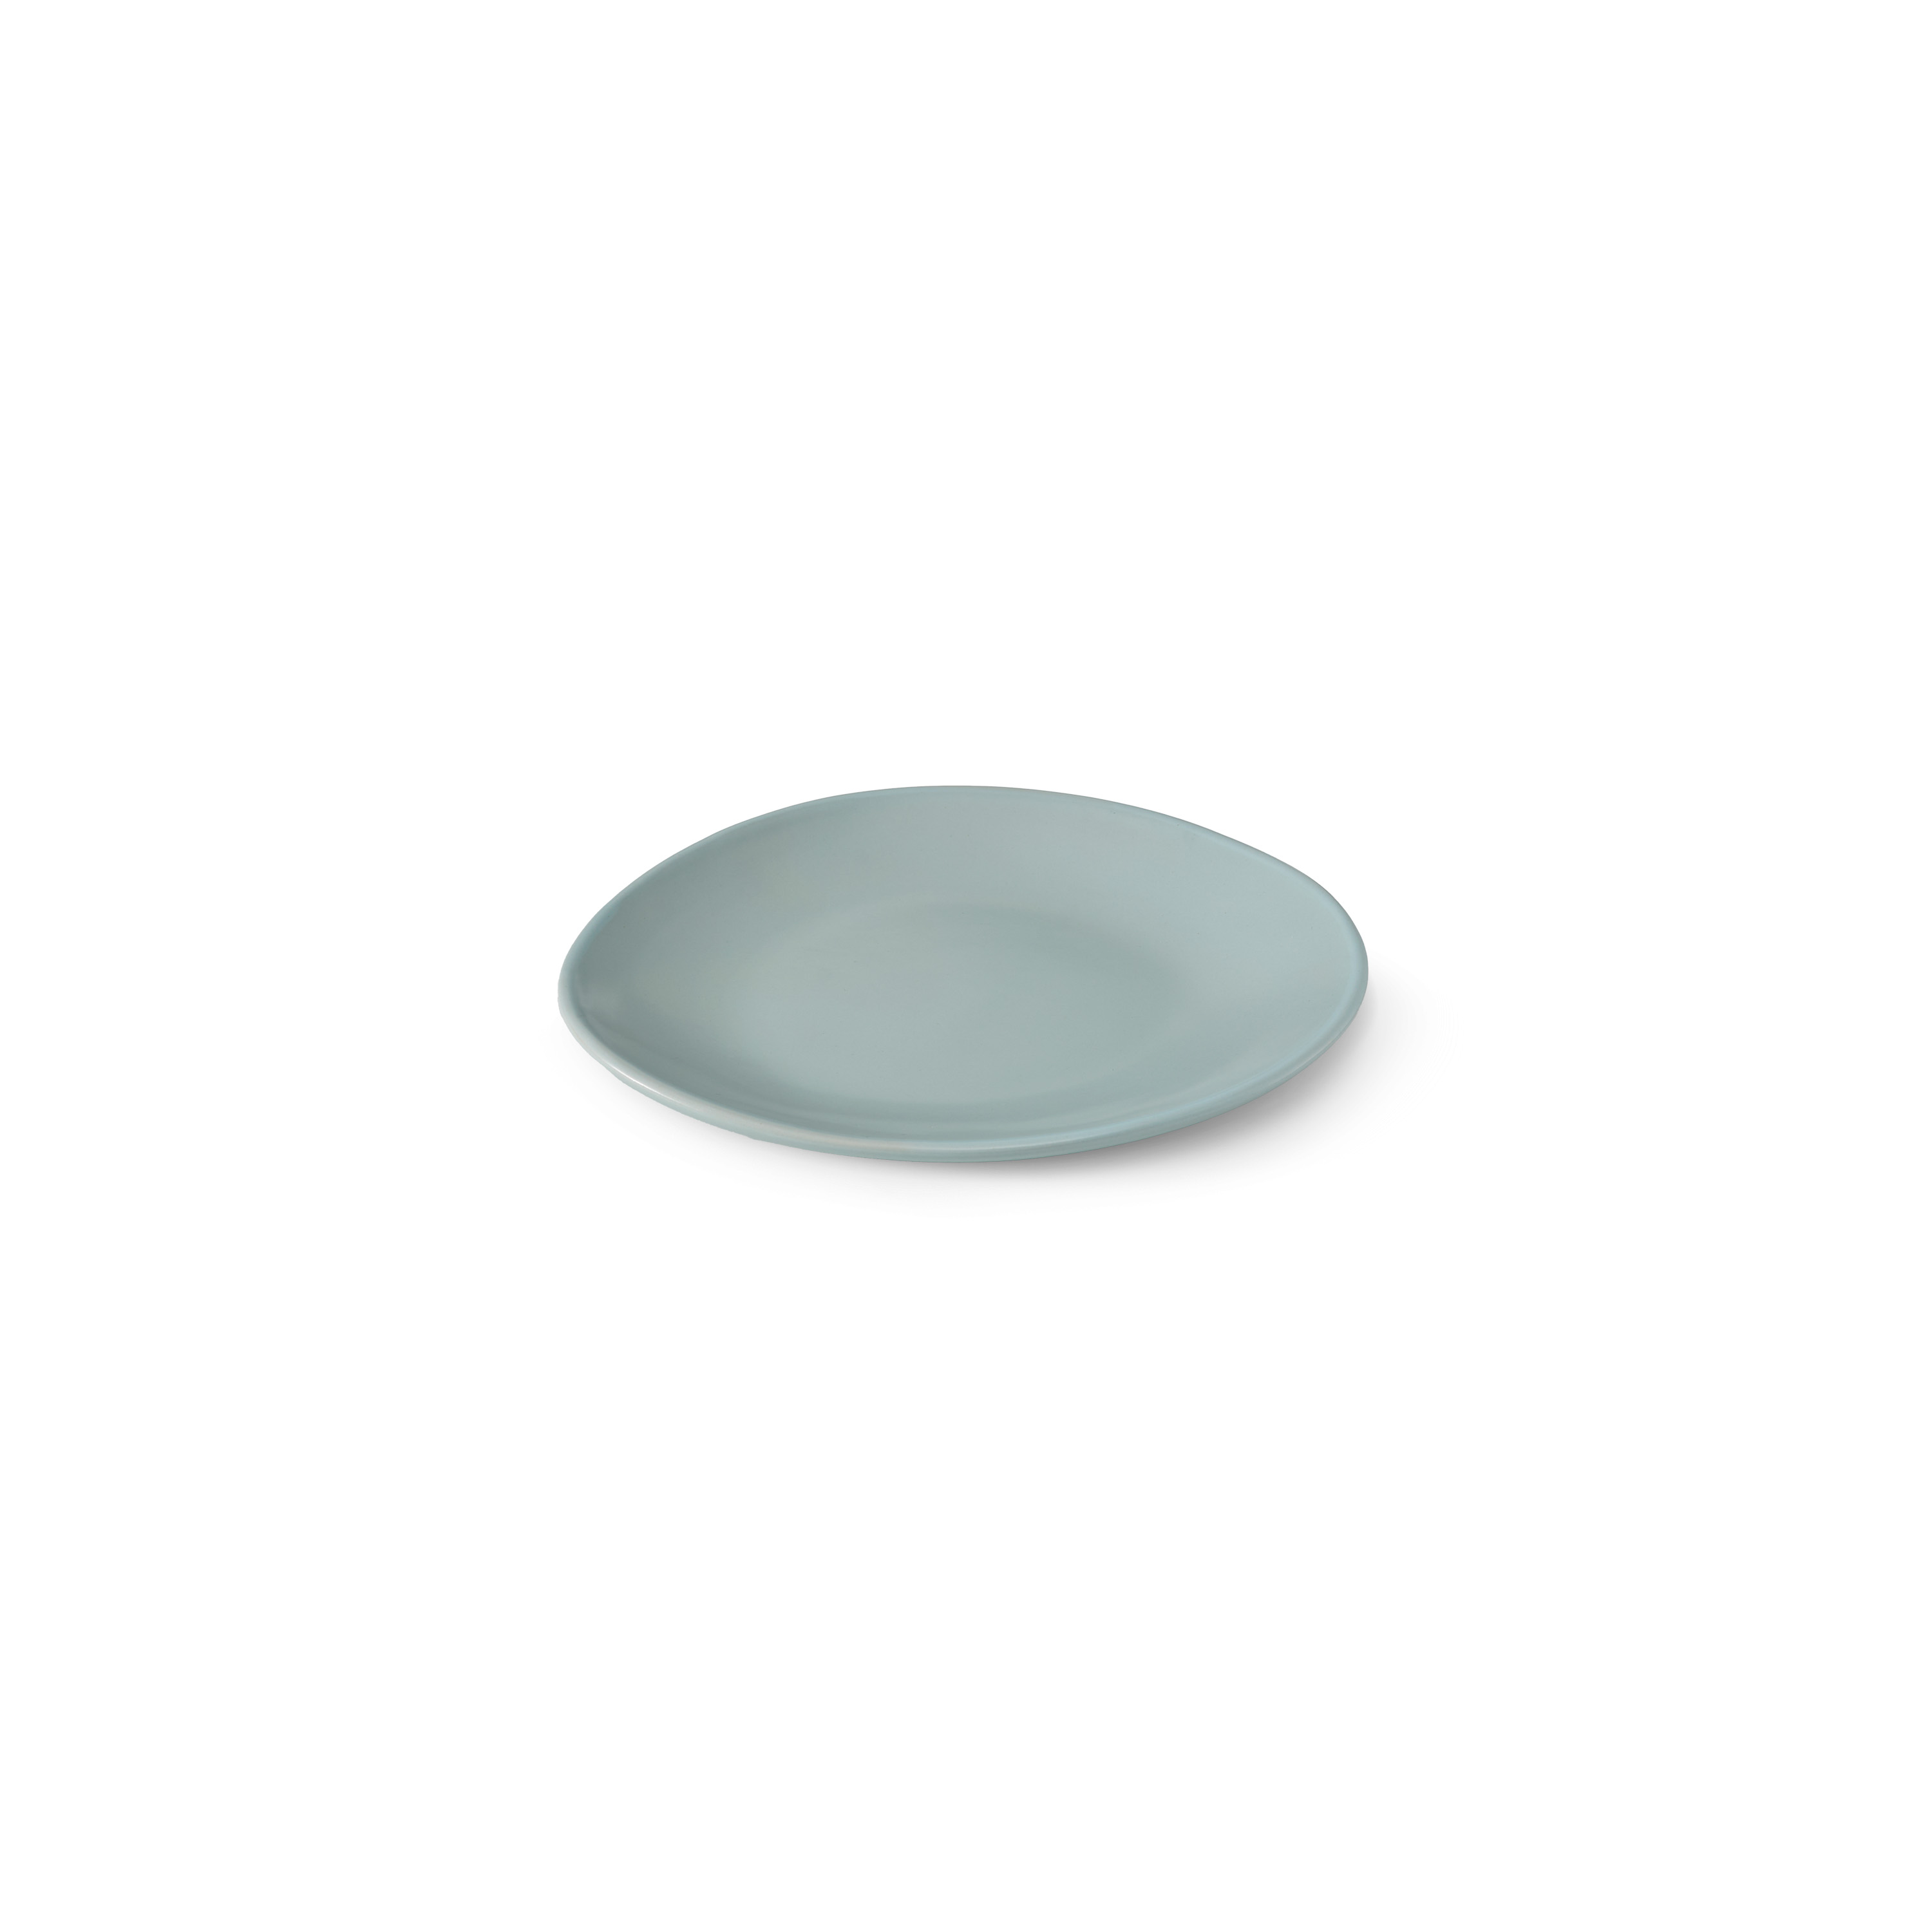 Tonkin Round Plate S: Light blue